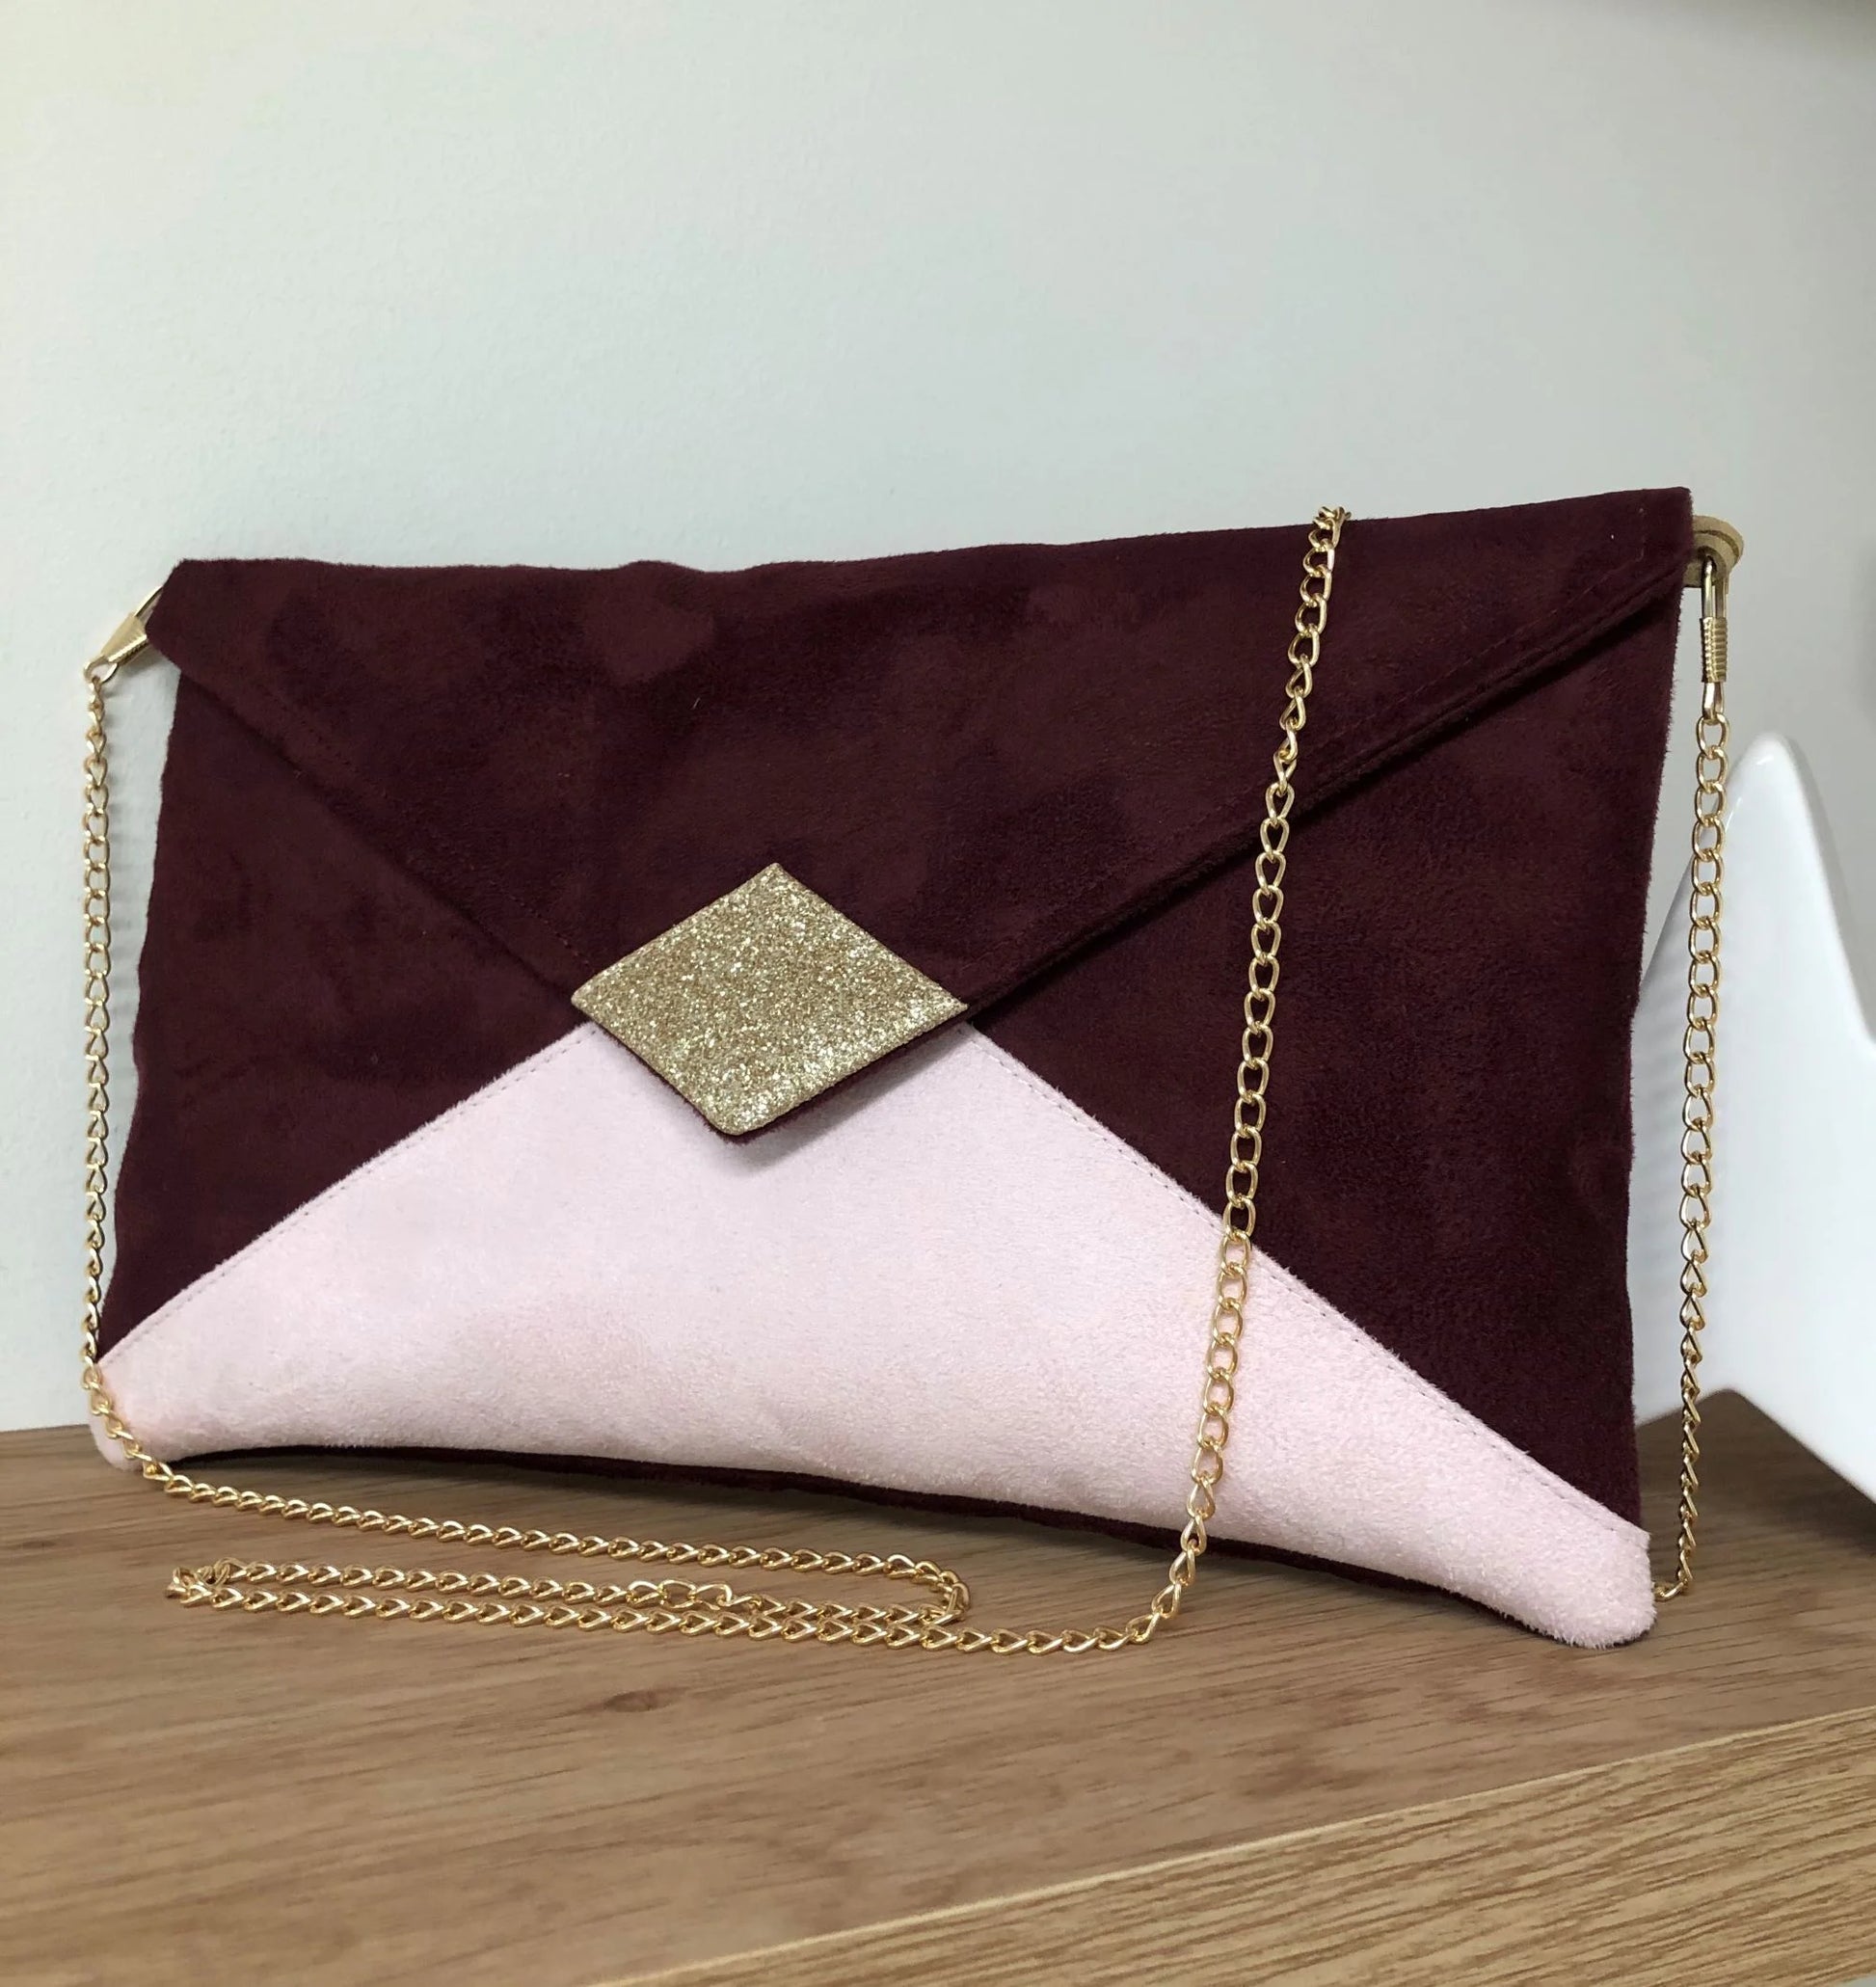 Le sac pochette Isa bordeaux et rose pâle à paillettes dorées, avec chainette amovible